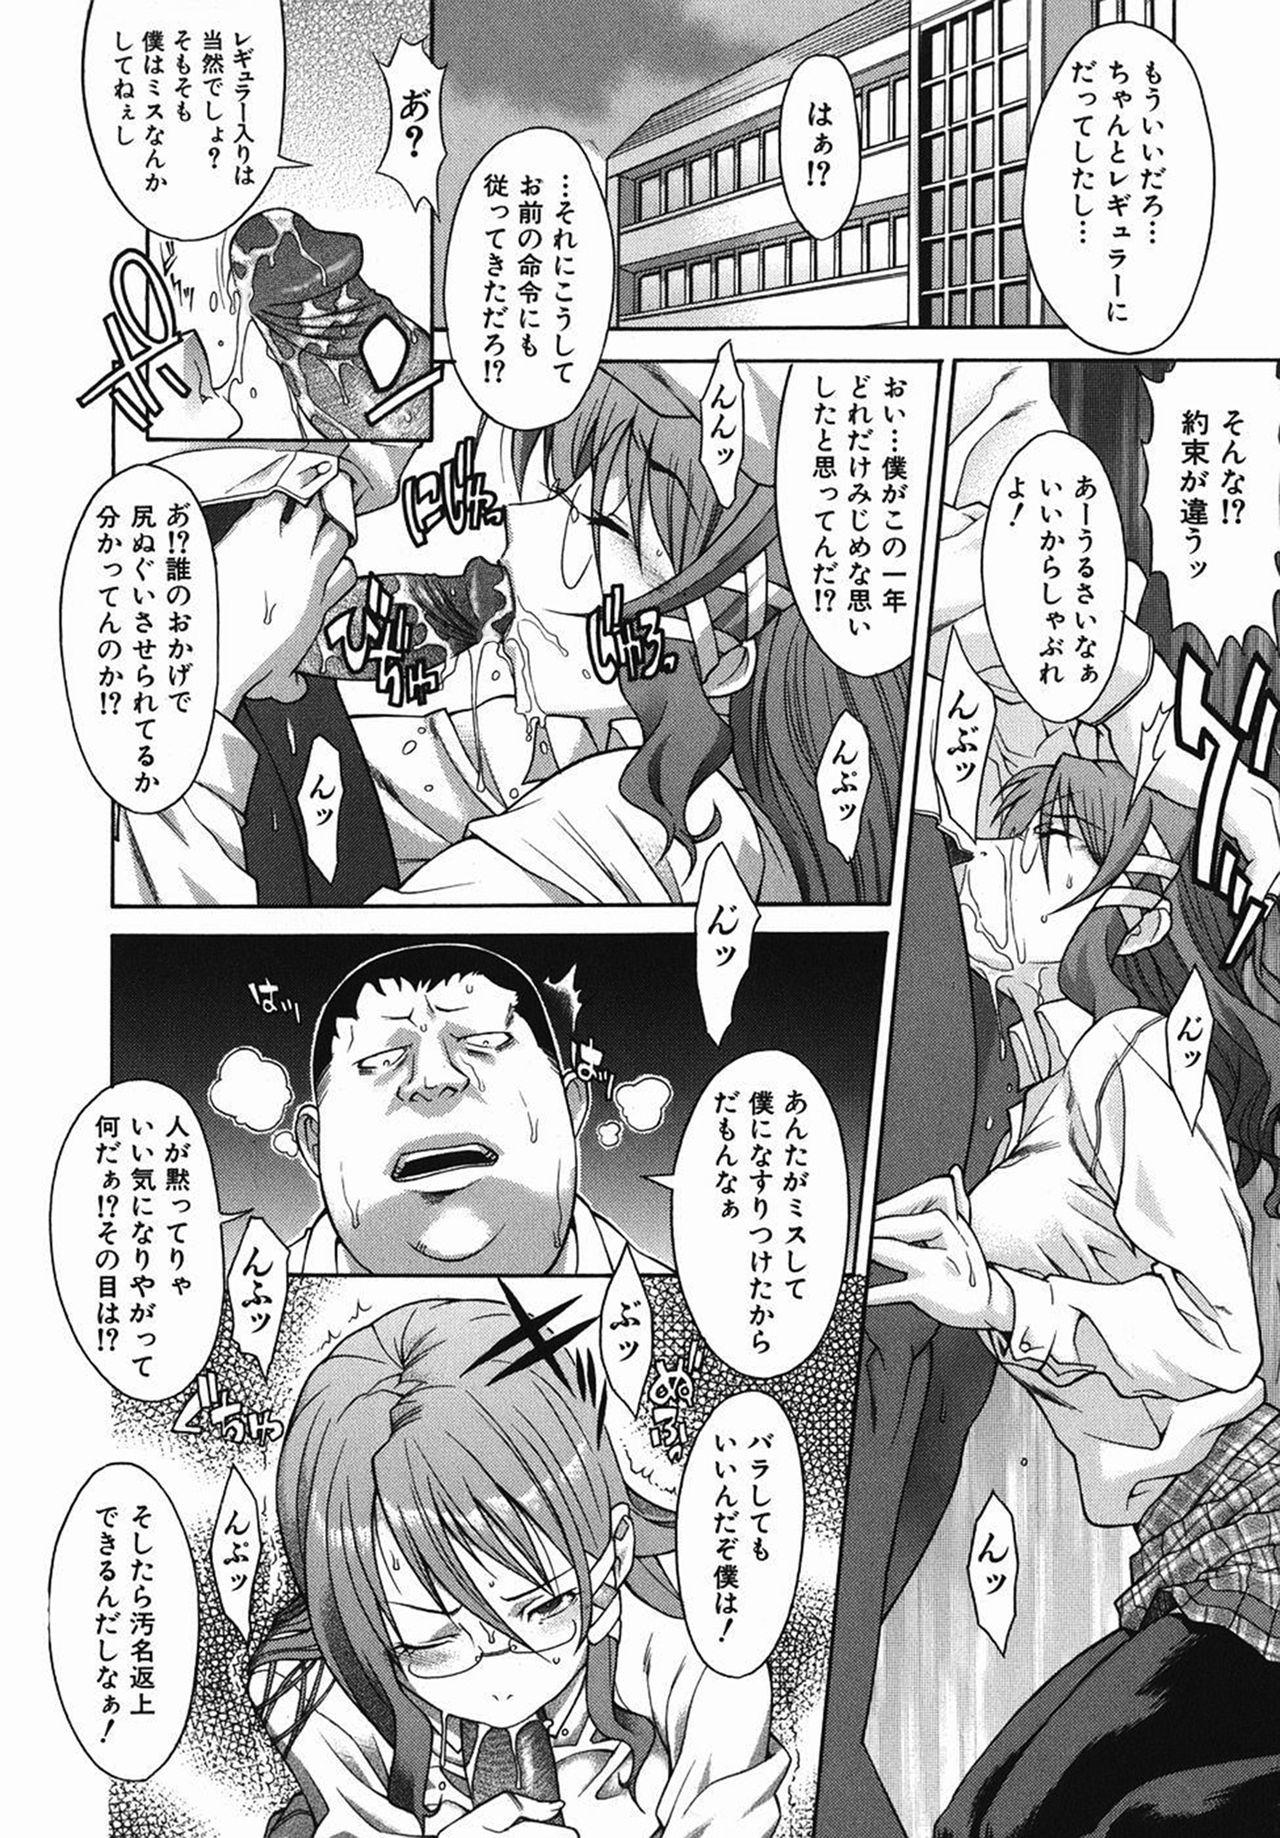 Furry Shi-sen Furry - Page 2